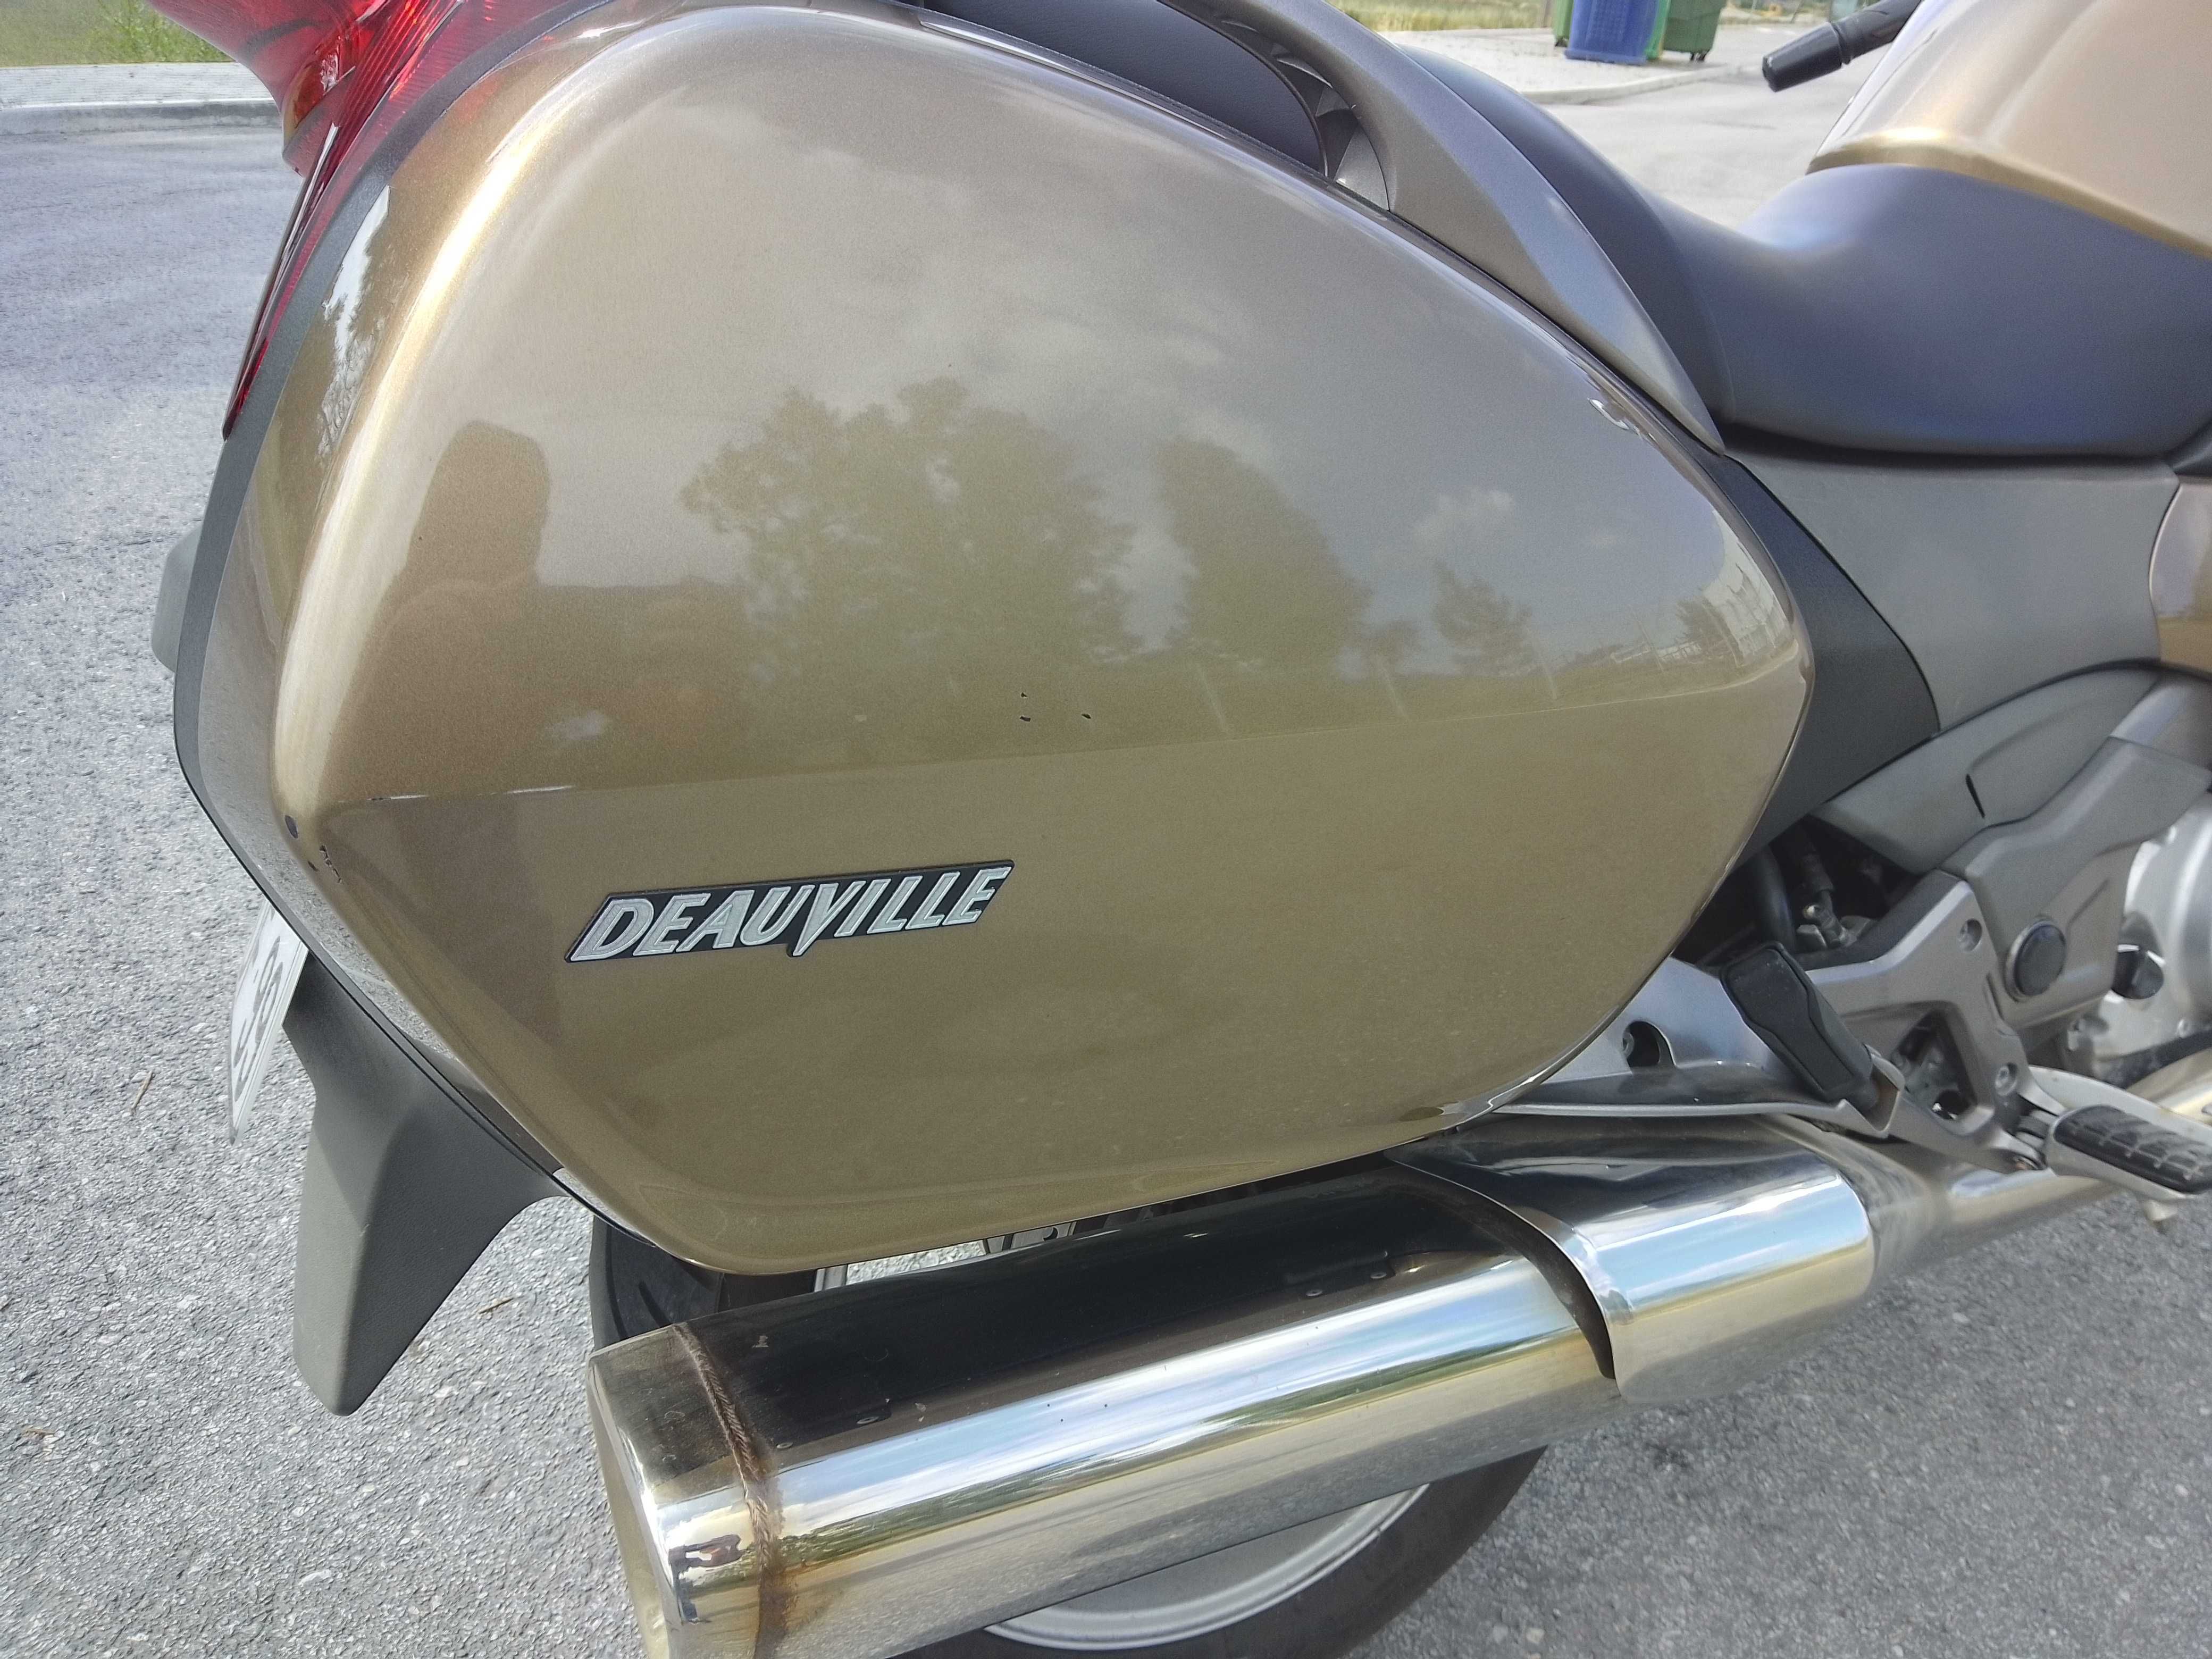 Honda Deauville 700